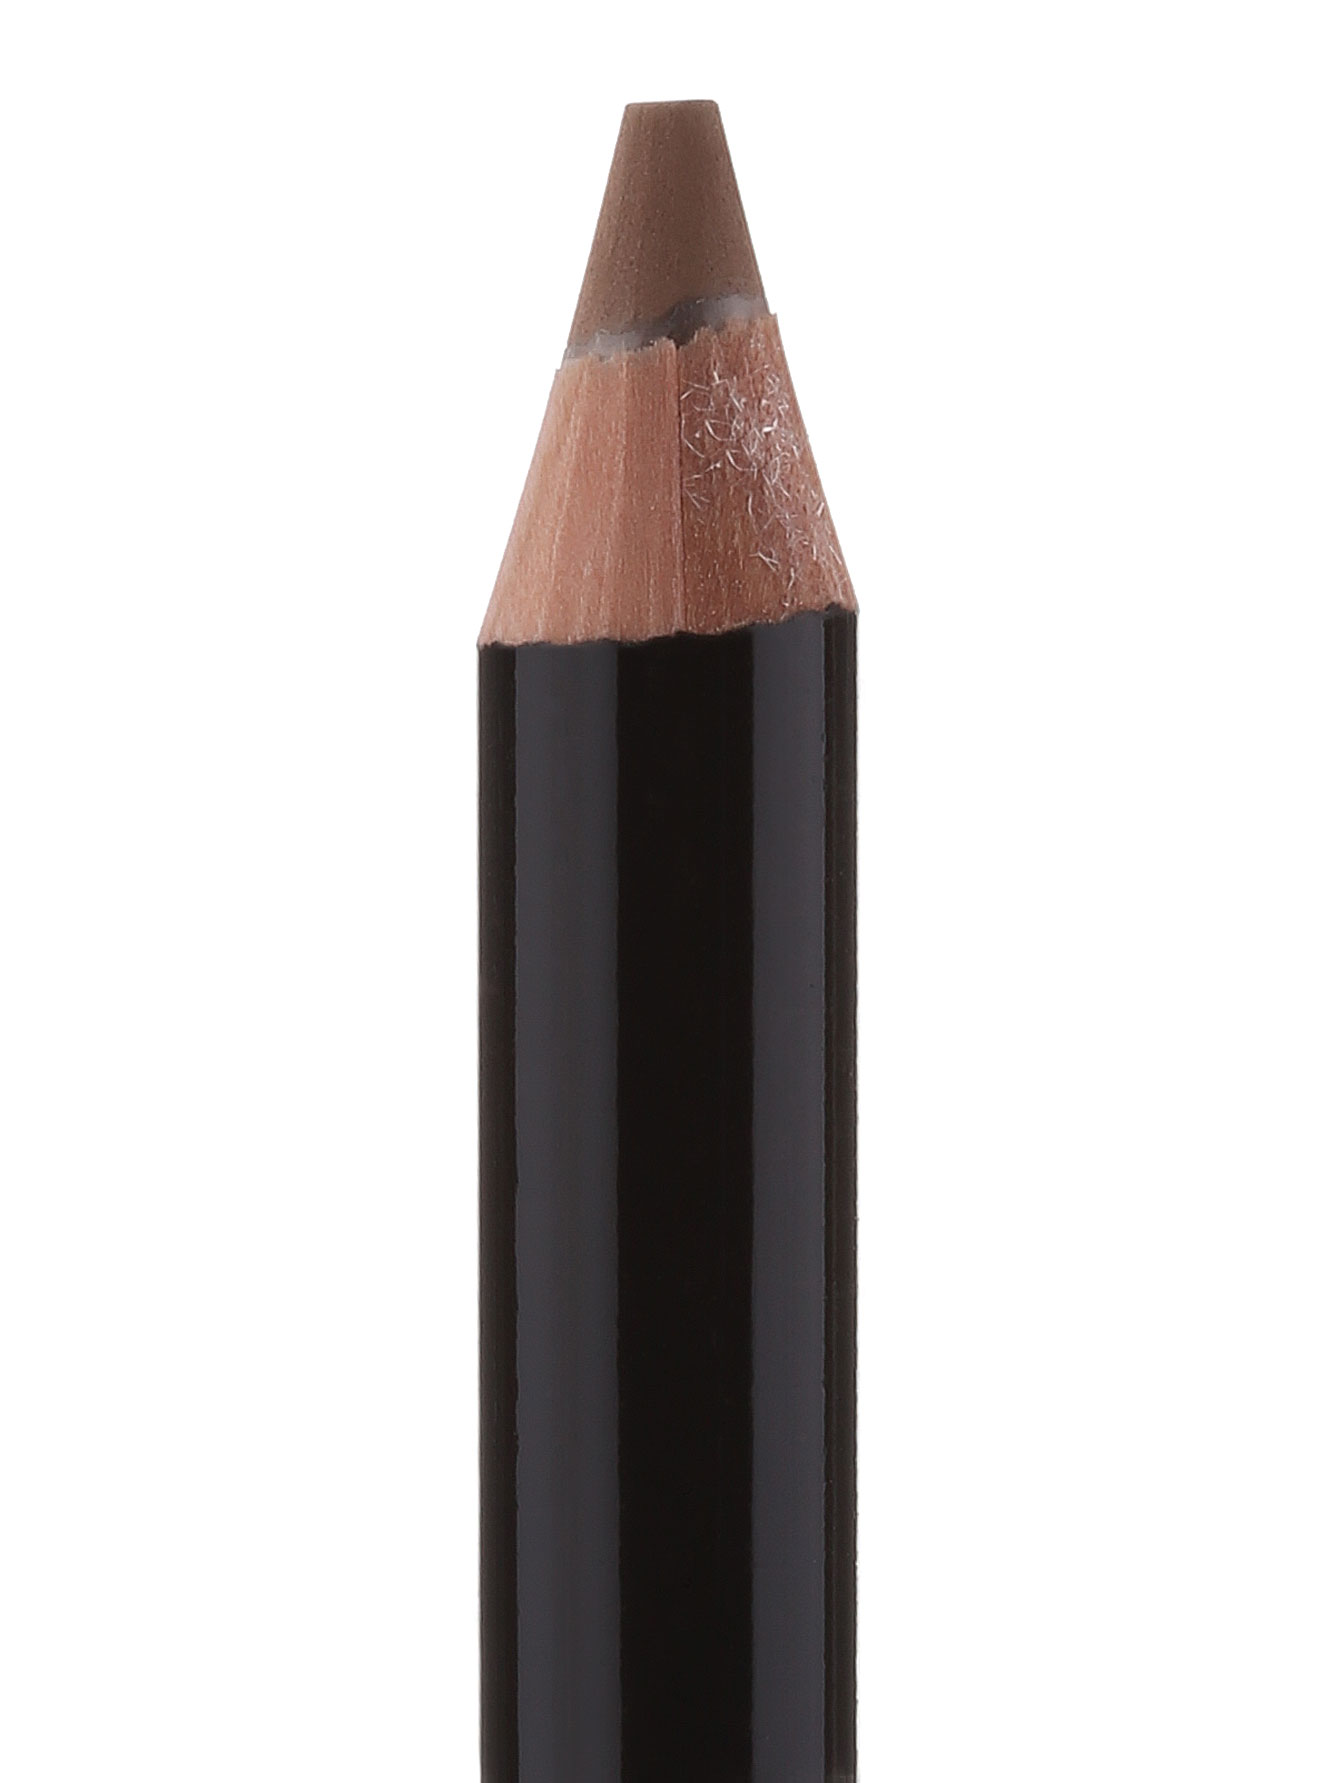  Карандаш для бровей - Blonde, Brow pencil - Общий вид